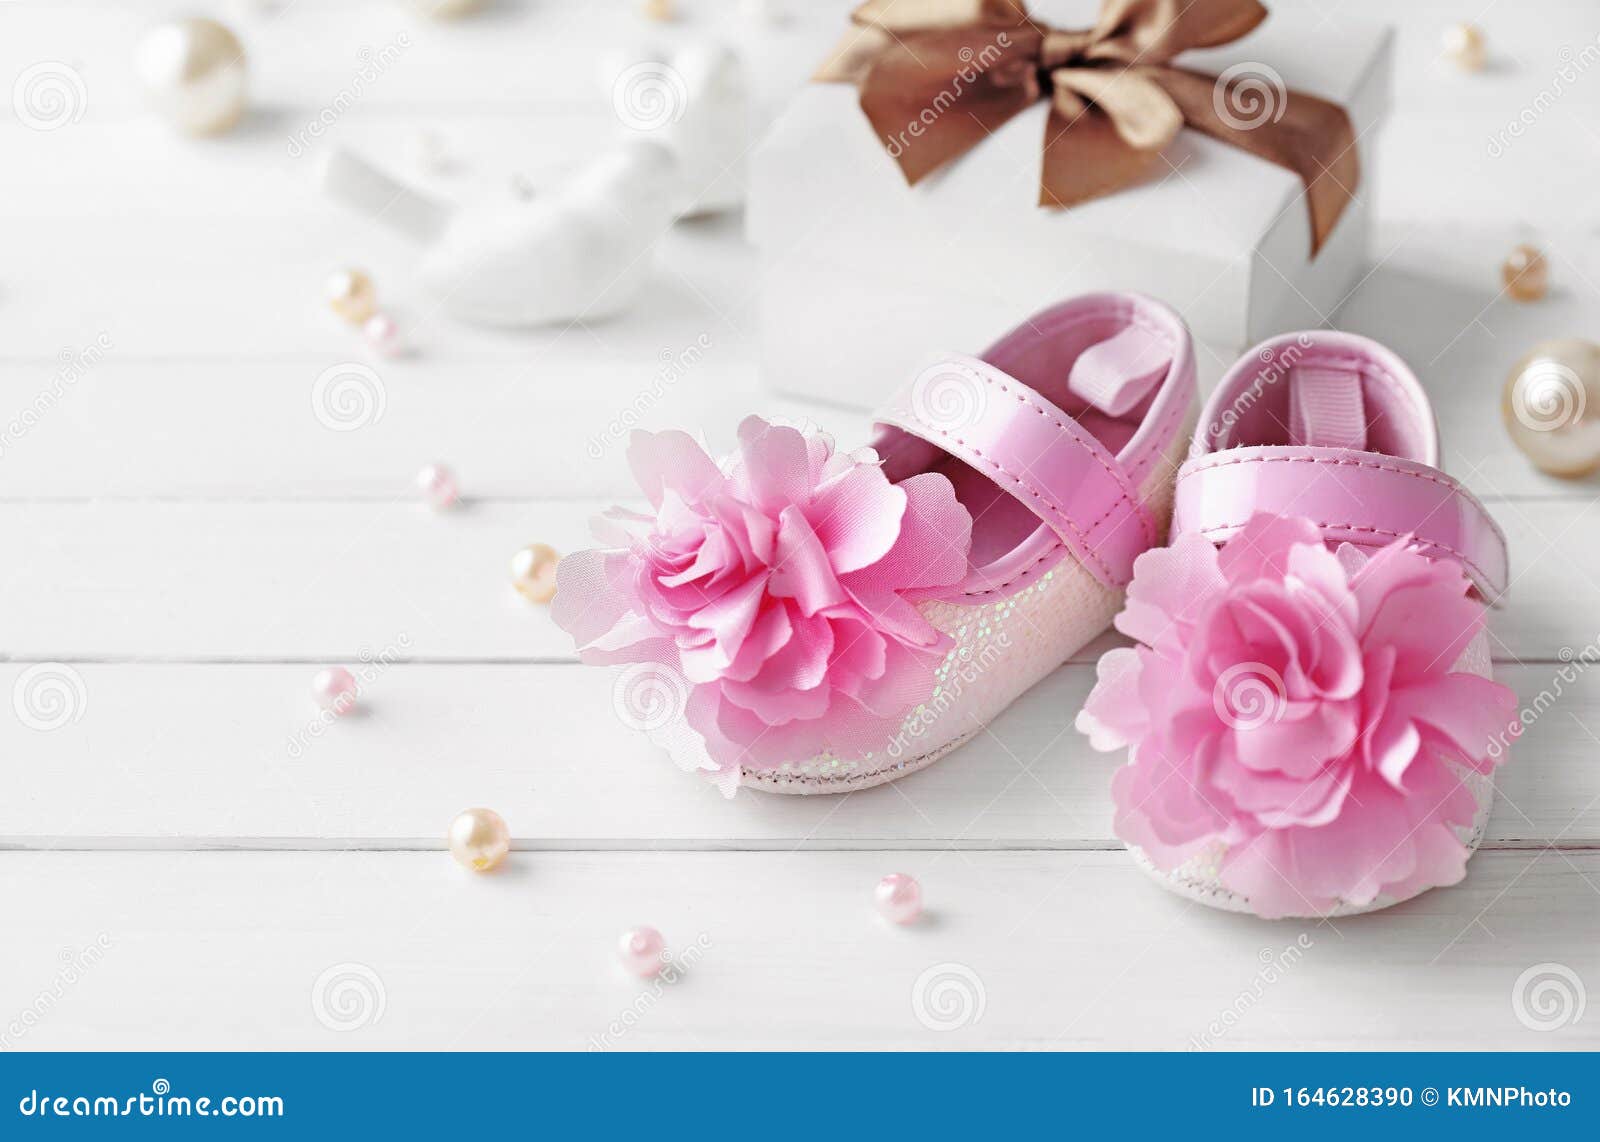 Chaussures Pour Bébés Accessoires De Naissance Pour Bébé Photo stock -  Image du accessoires, abord: 164628390